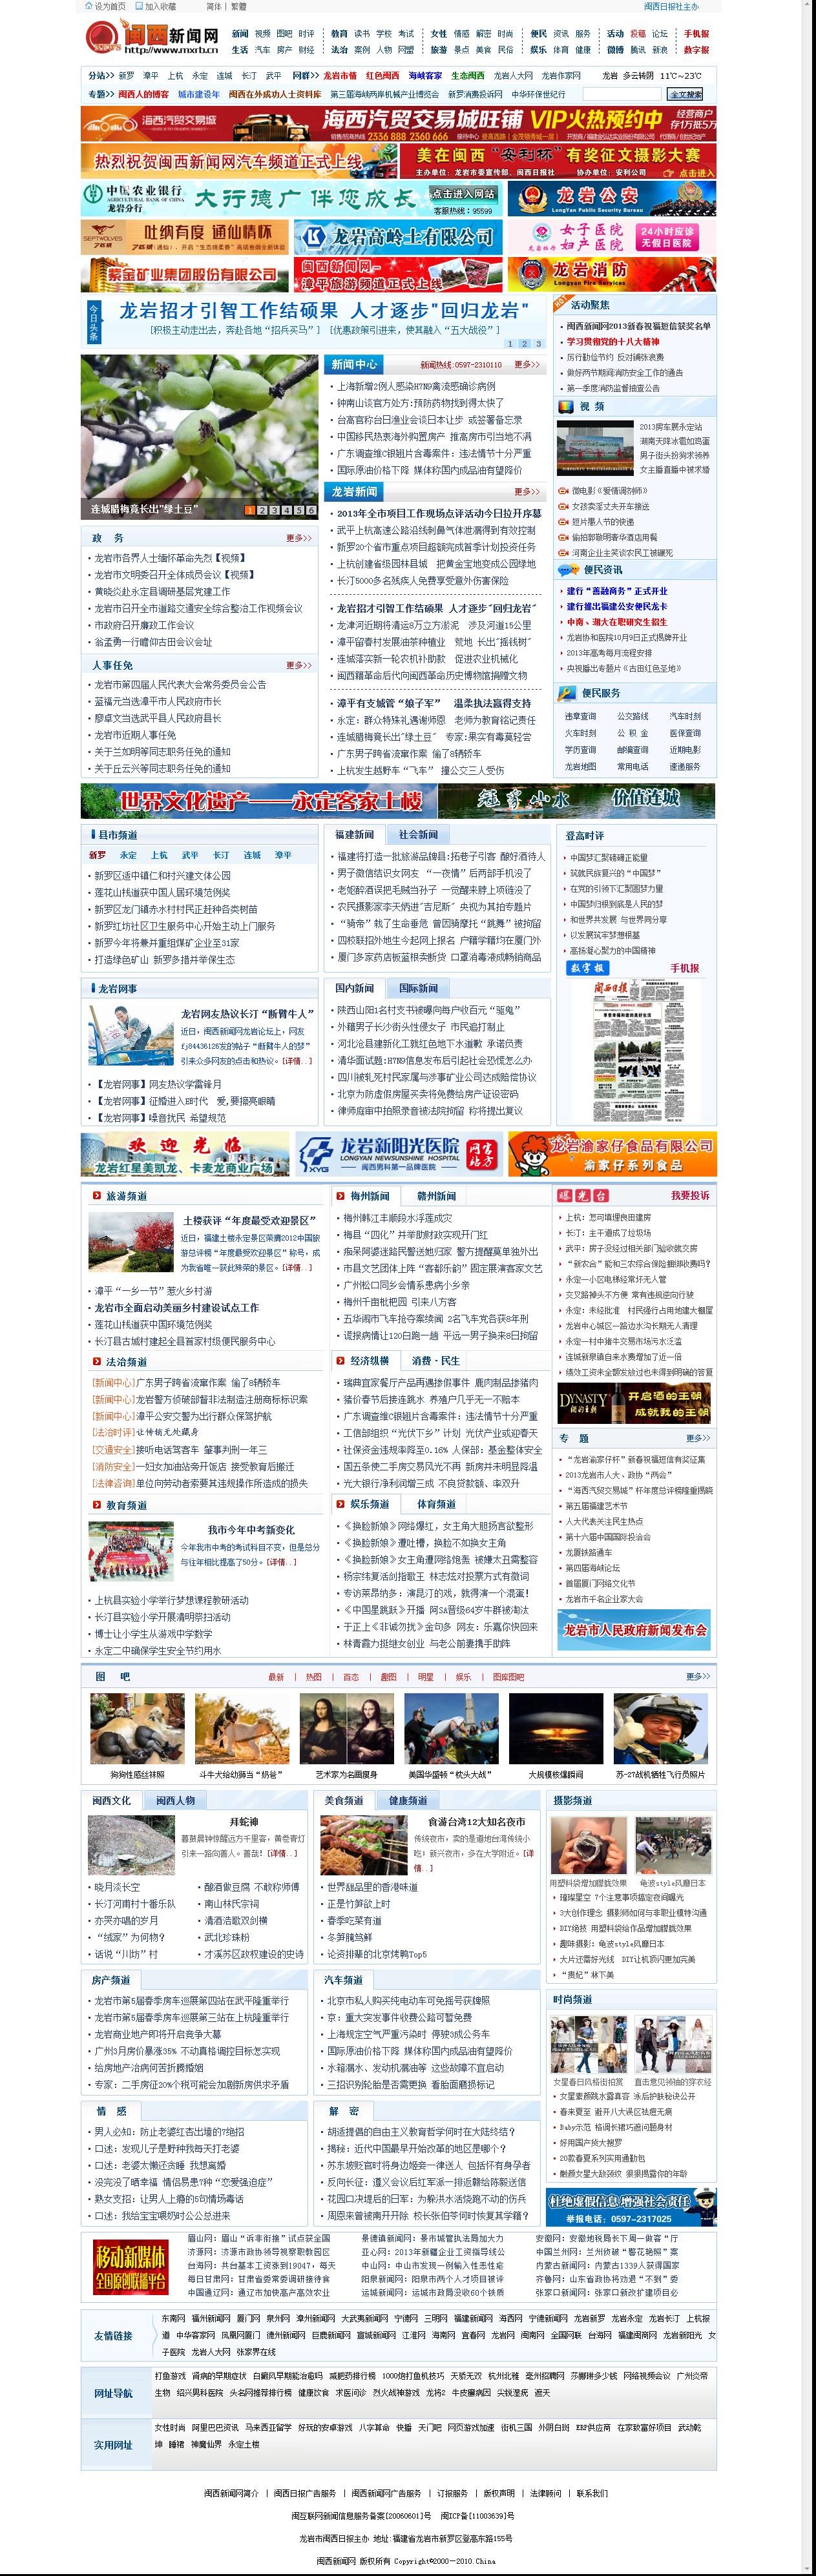 閩西新聞網